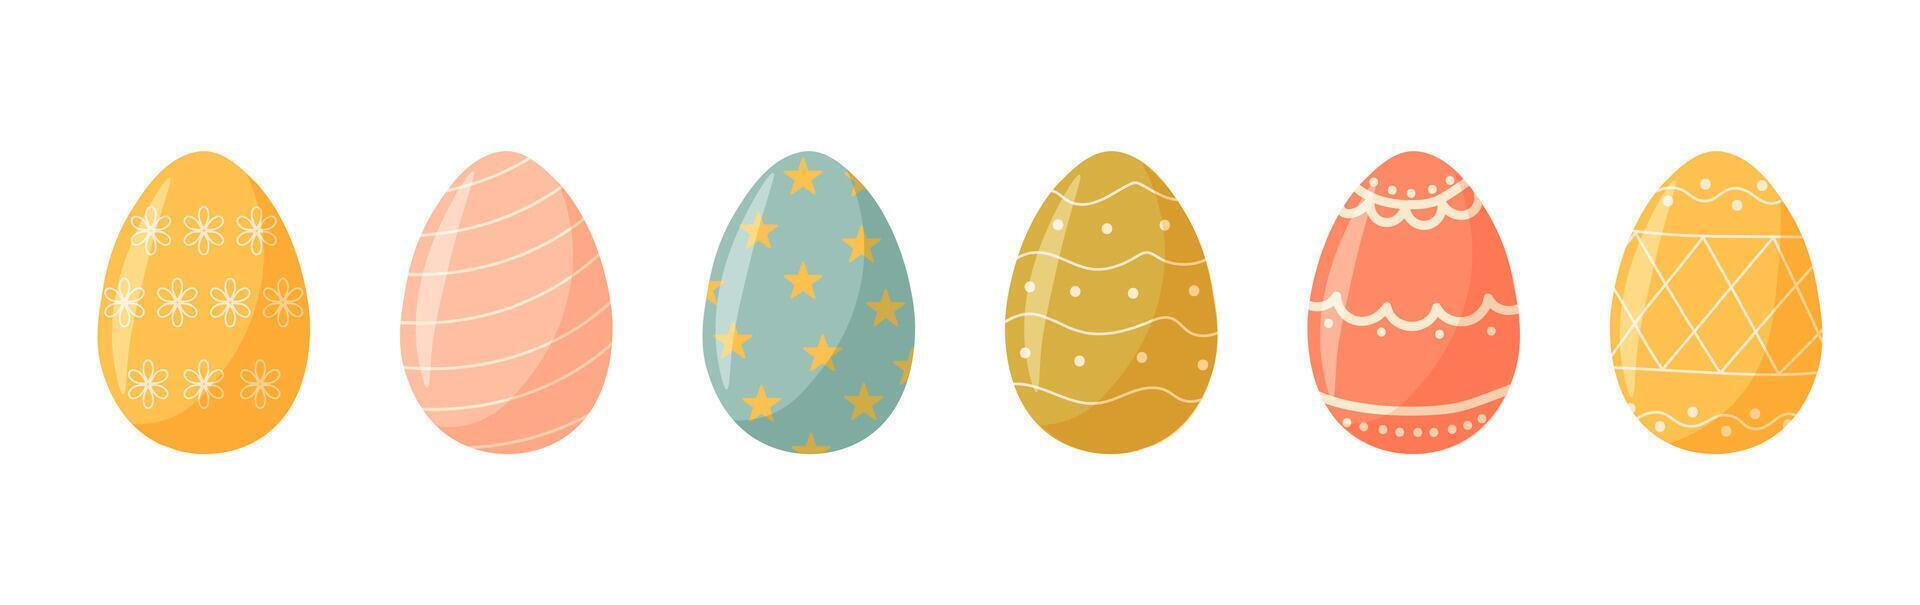 uppsättning av söt färgrik påsk ägg med mönster. traditionell religiös påsk symboler. dekorativ element samling vektor